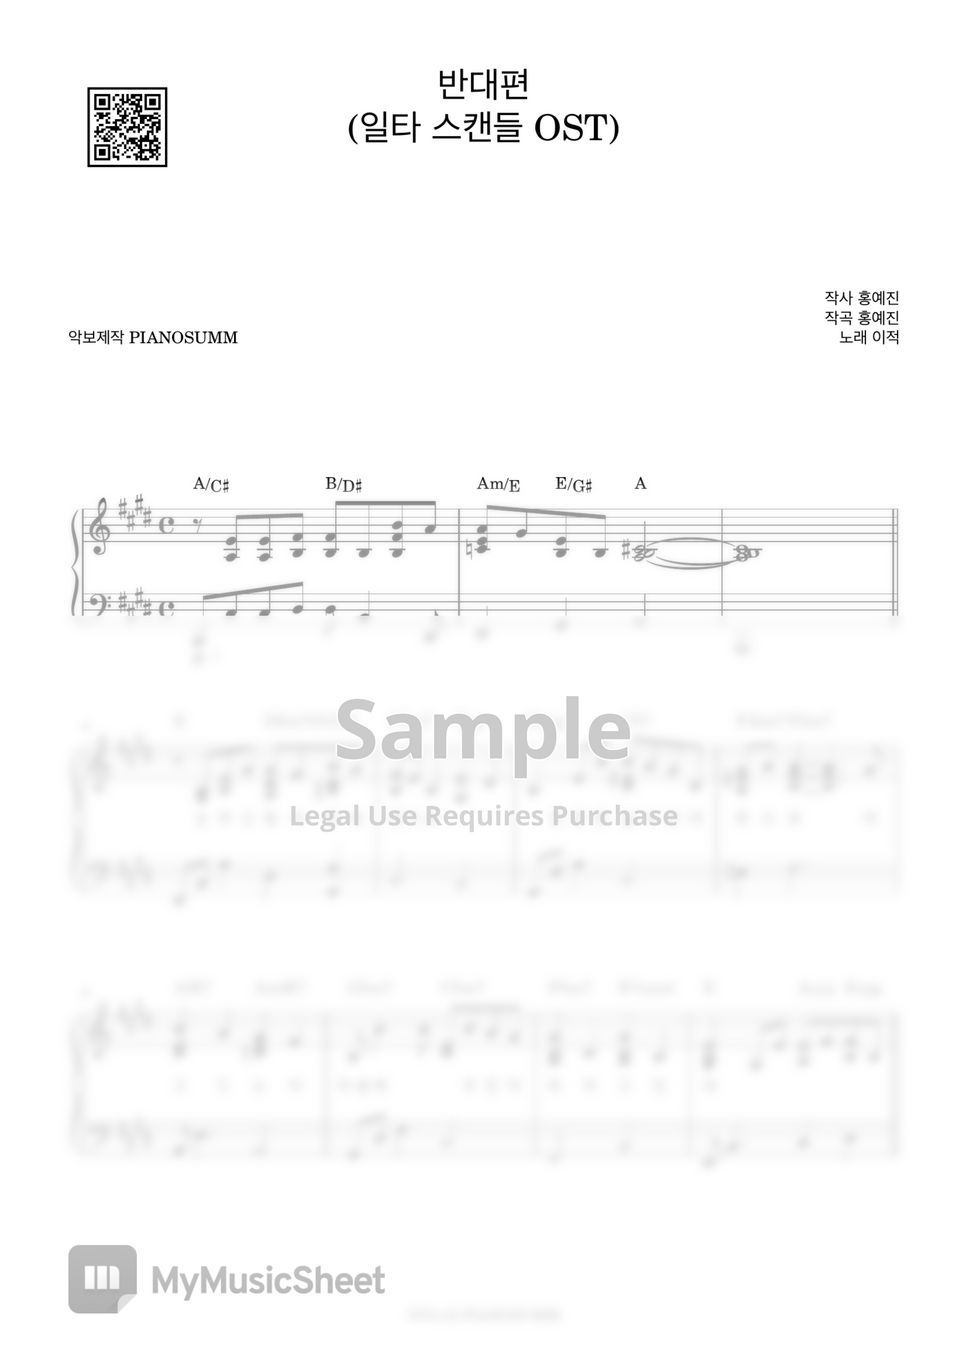 이적 - 반대편 (일타 스캔들 OST) (Includes Fkey) by PIANOSUMM